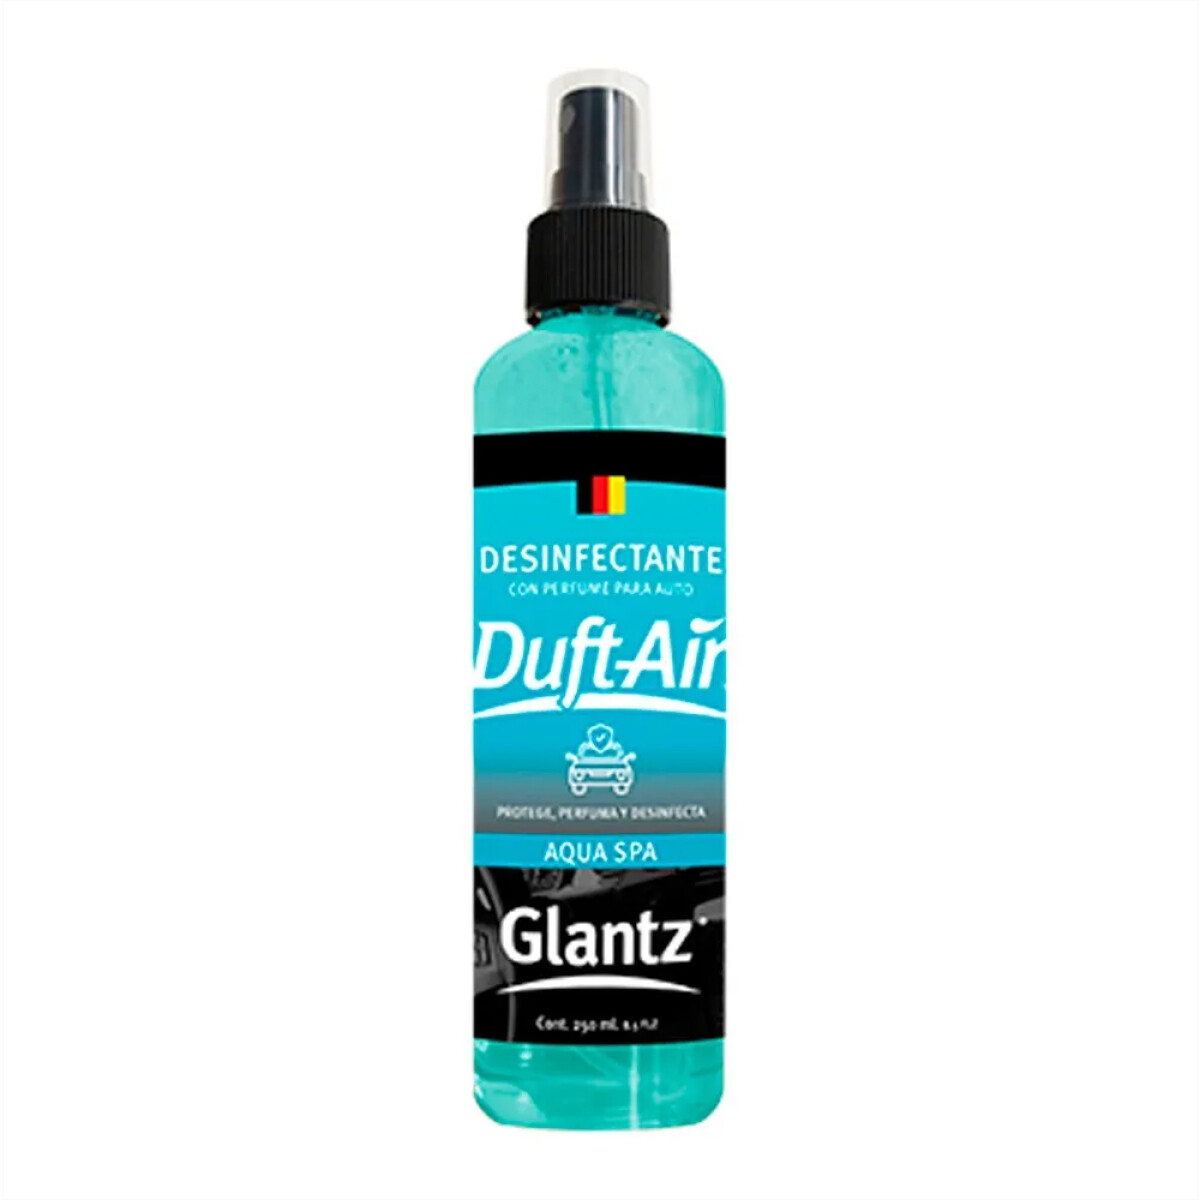 Perfumador Desinfectante para Auto en Spray 250ml Aqua Spa - Aqua Spa 